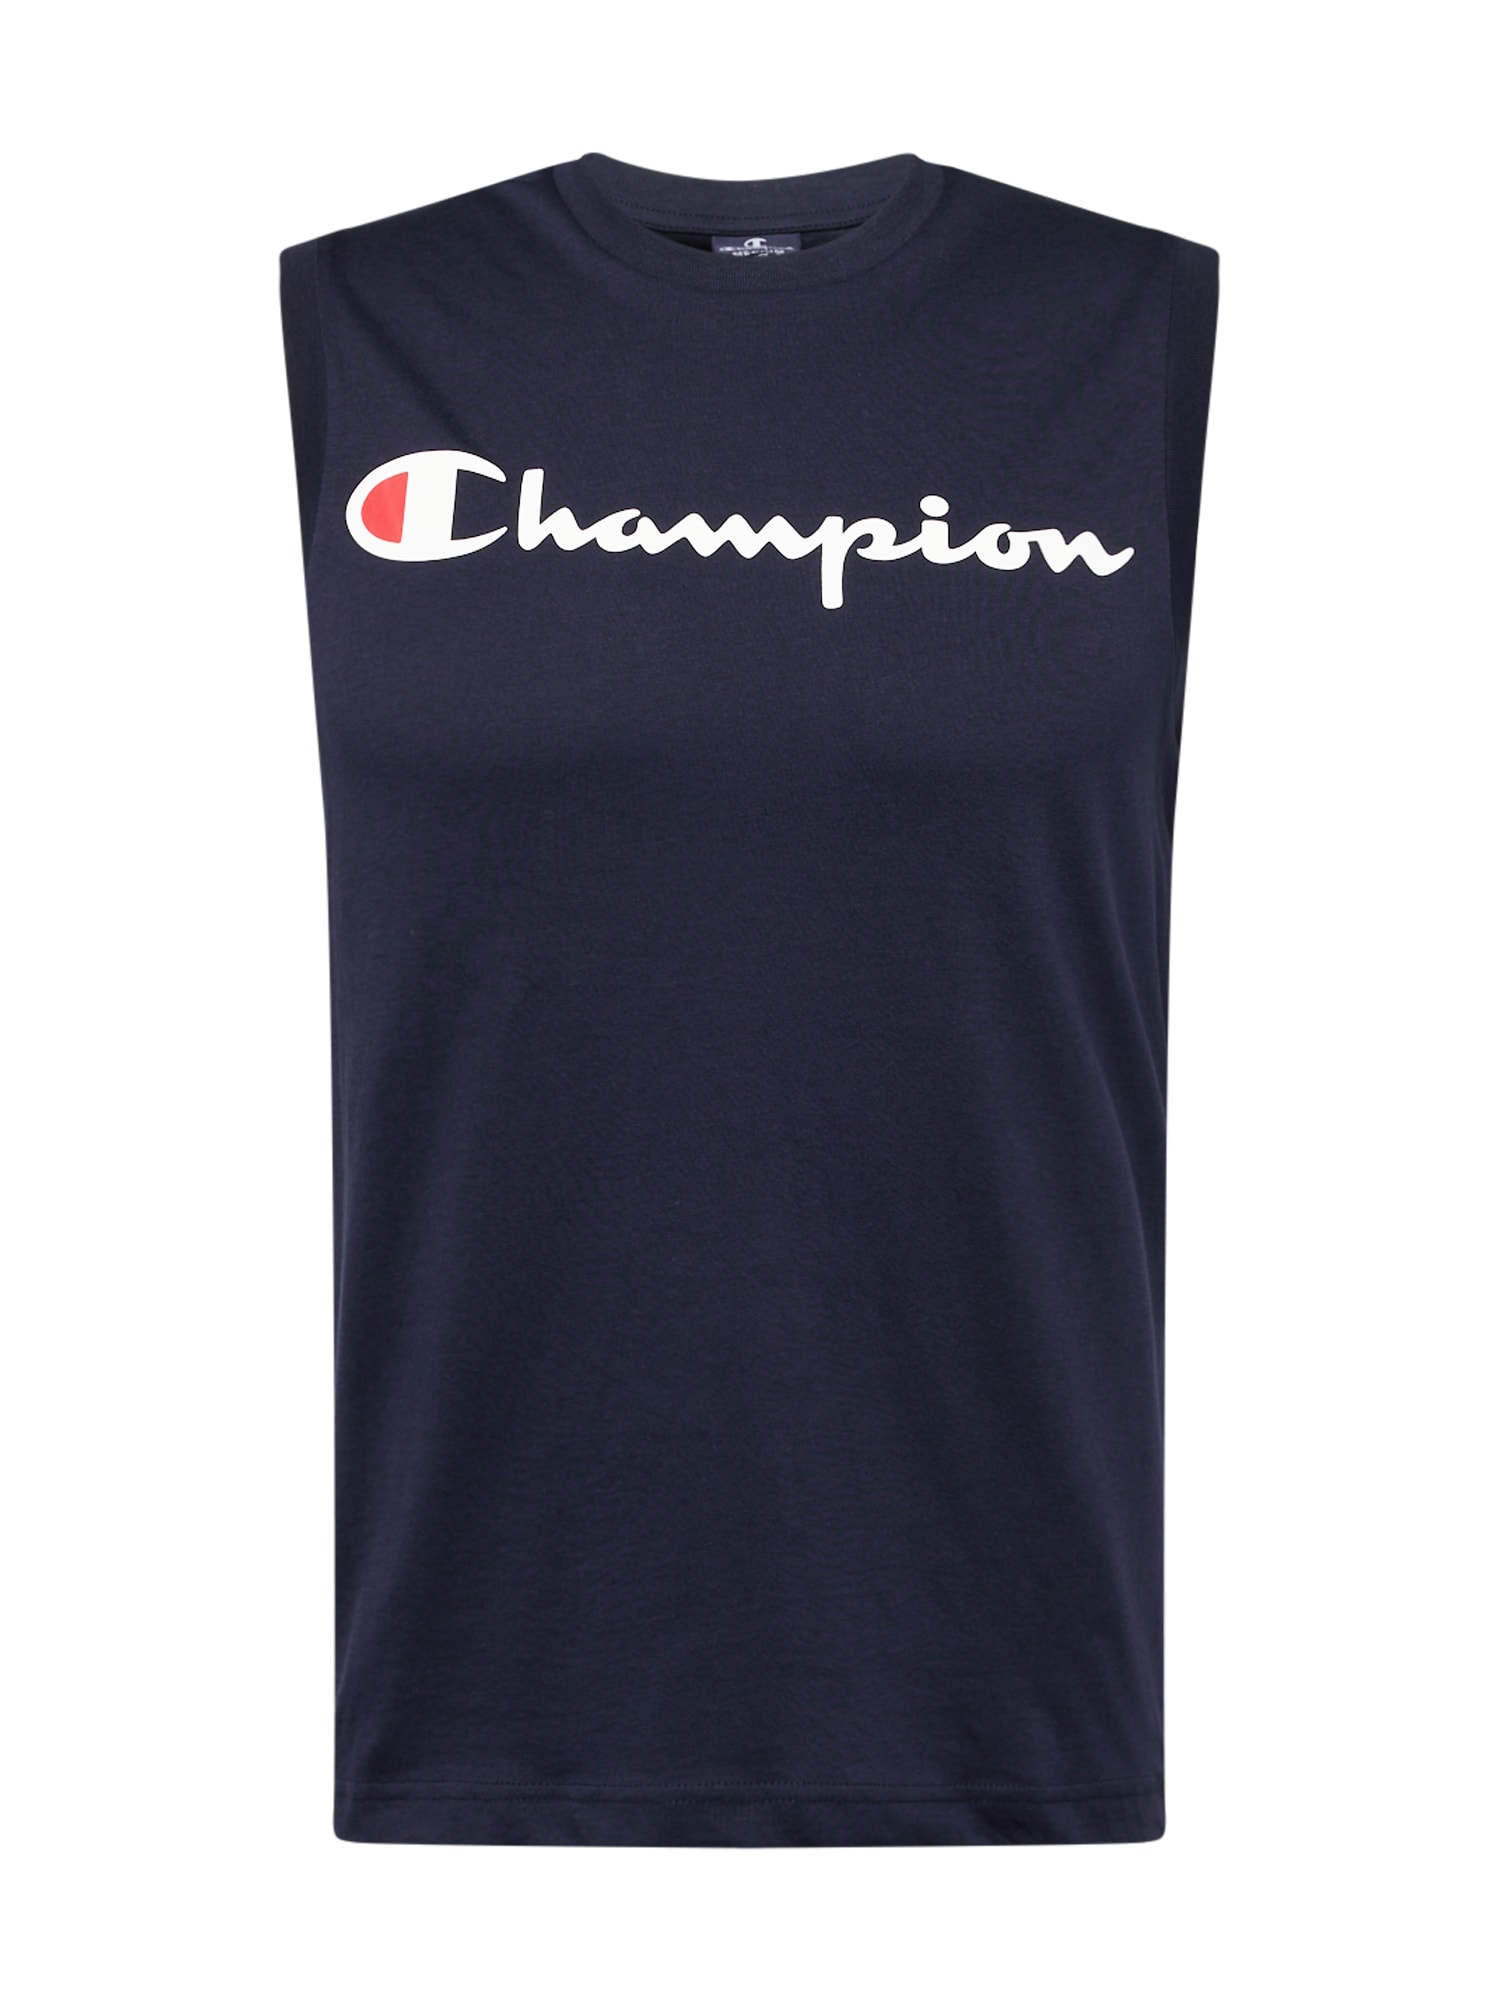 Champion Authentic Athletic Apparel Marškinėliai tamsiai mėlyna jūros spalva / kraujo spalva / balta